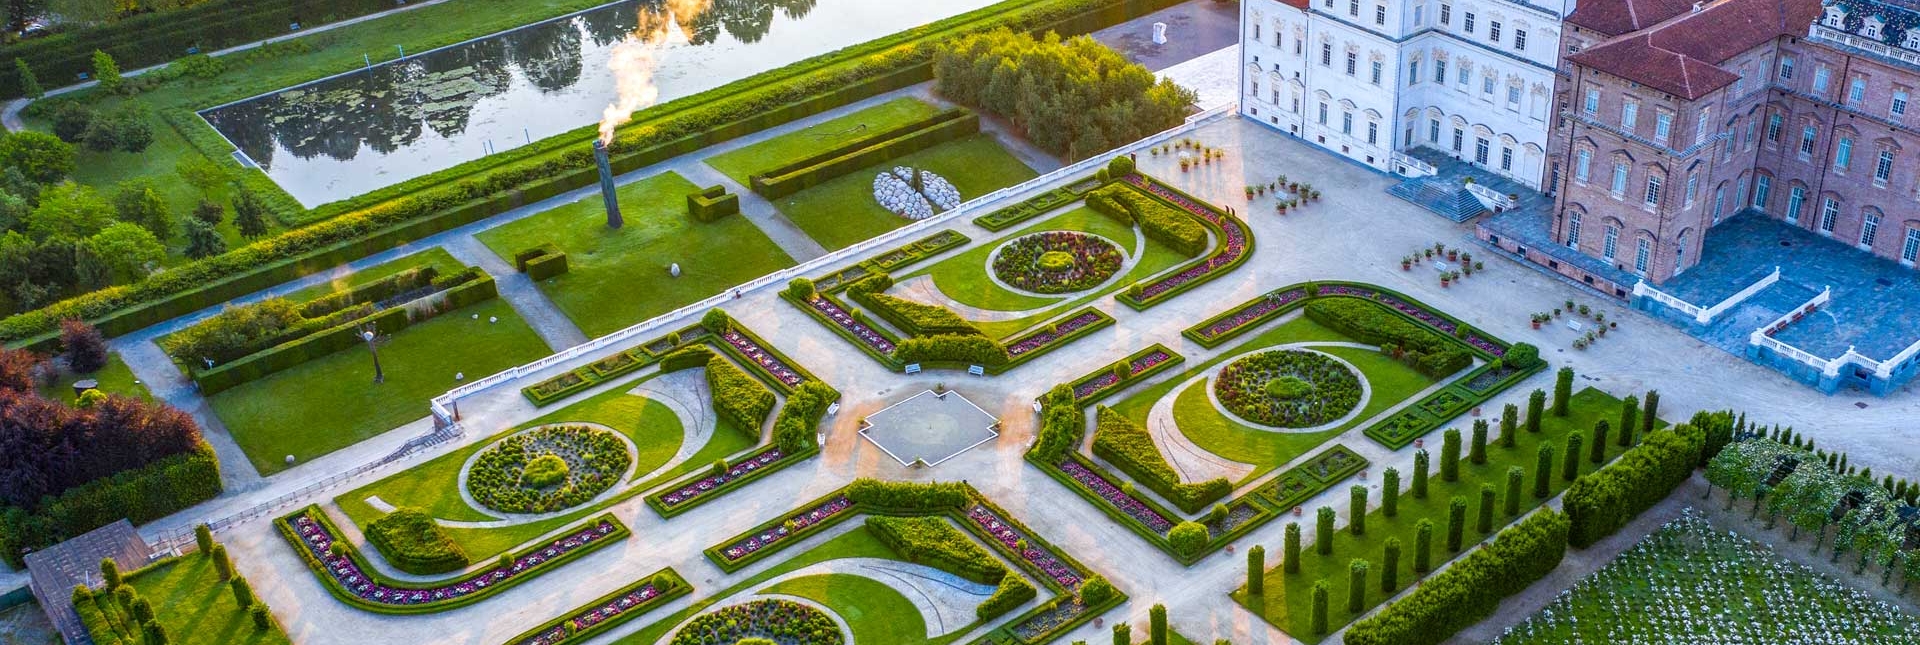 Die Gärten, Luftaufnahme. Foto von Dario Fusaro